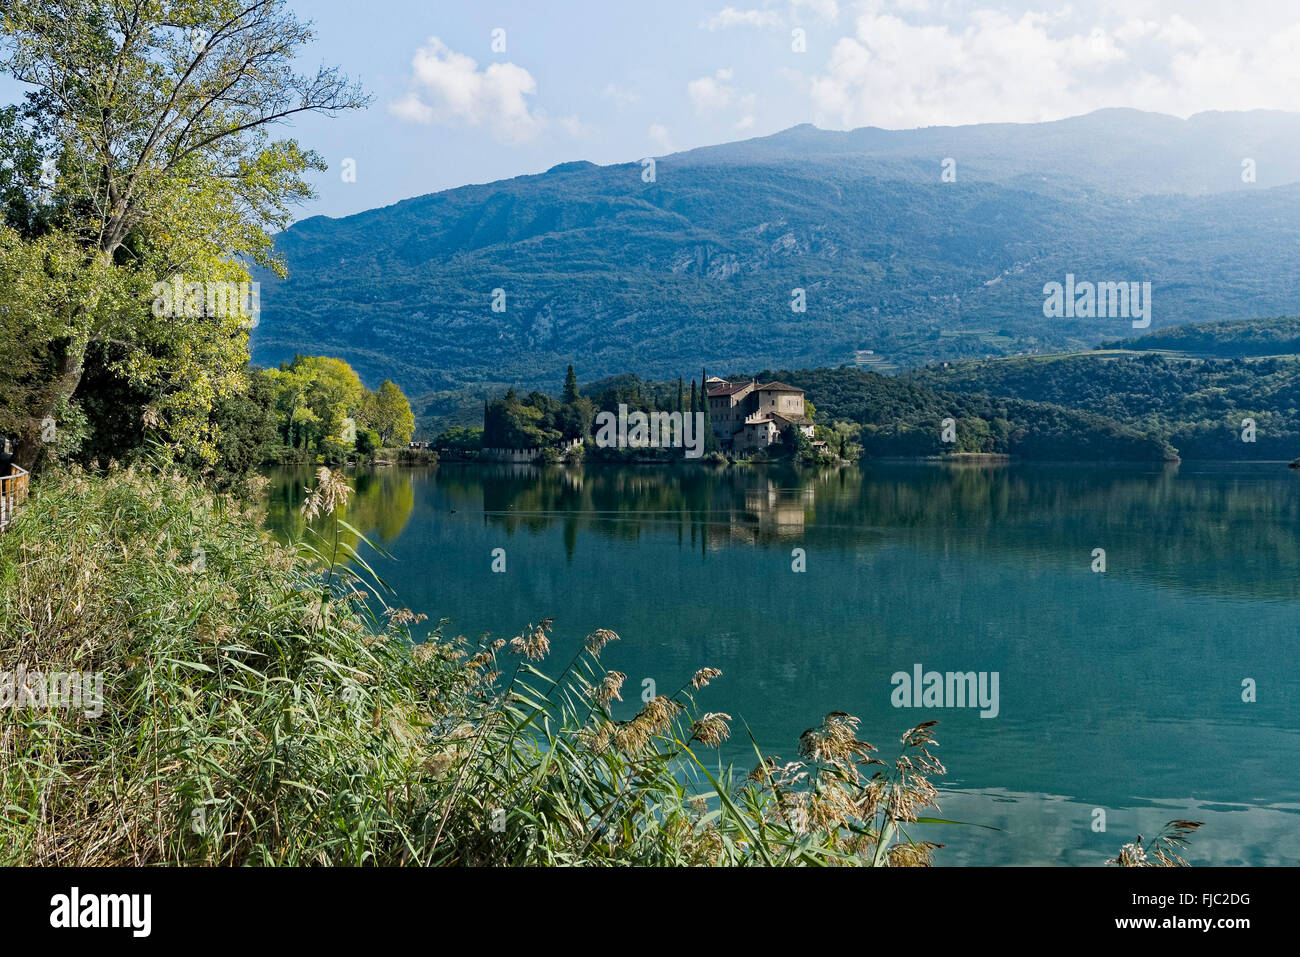 Lago di Toblino mit Schloss Castel Toblino, Trentino, Italien | Lake Toblino with its castle Castel Toblino, Trentino, Italy Stock Photo